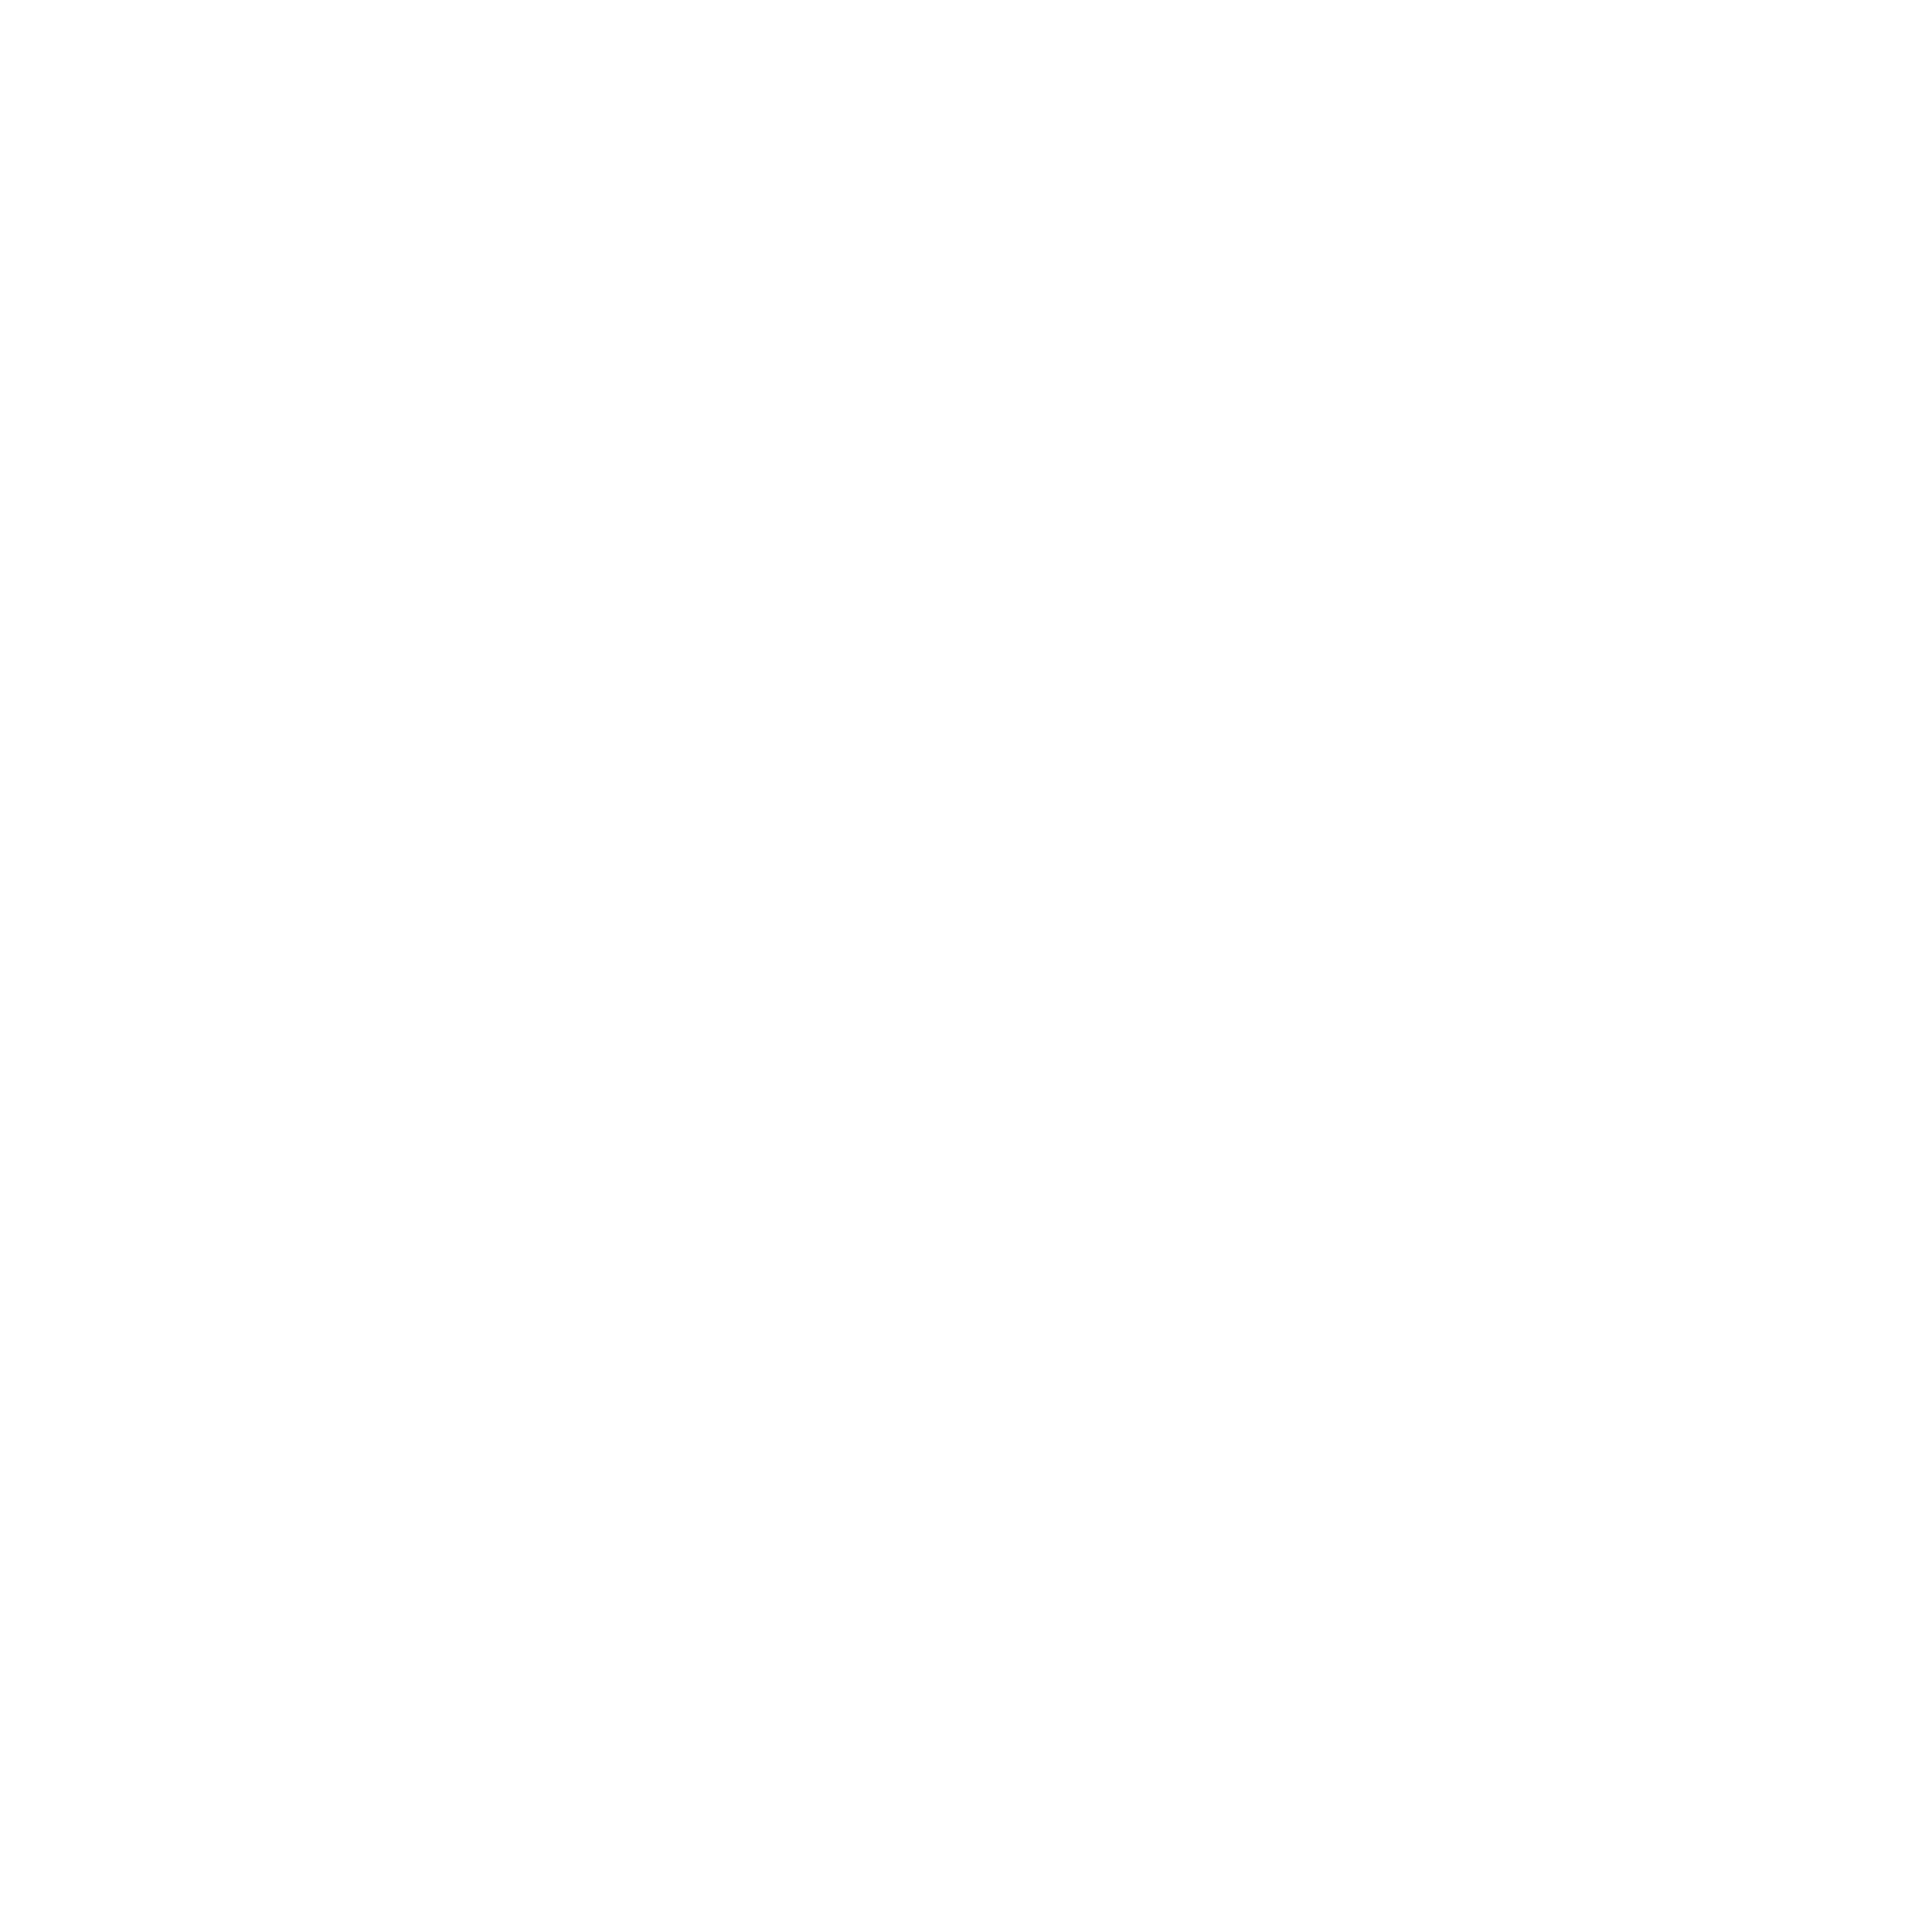 Synesso text logo white